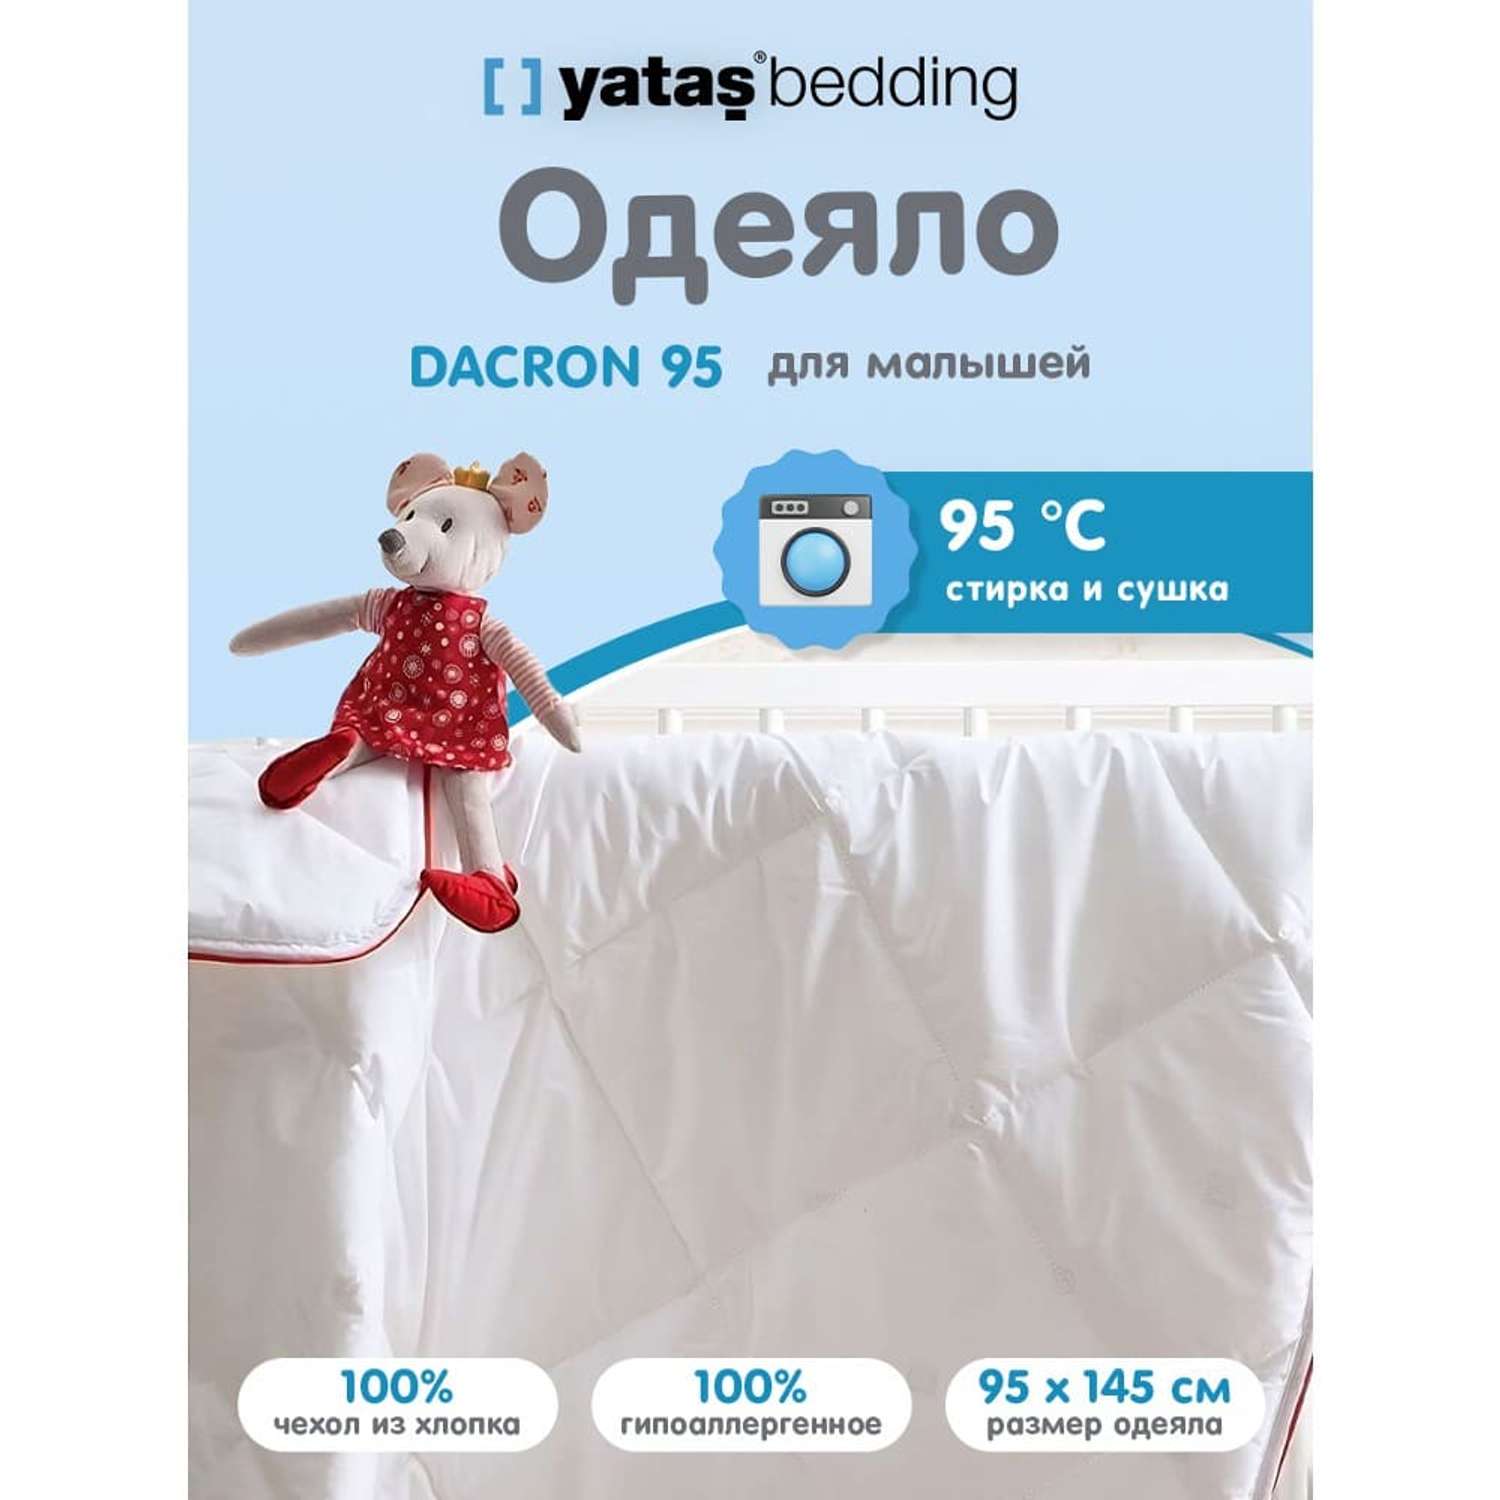 Одеяло детское стеганое Yatas Bedding 95x145 см Dacron - фото 2